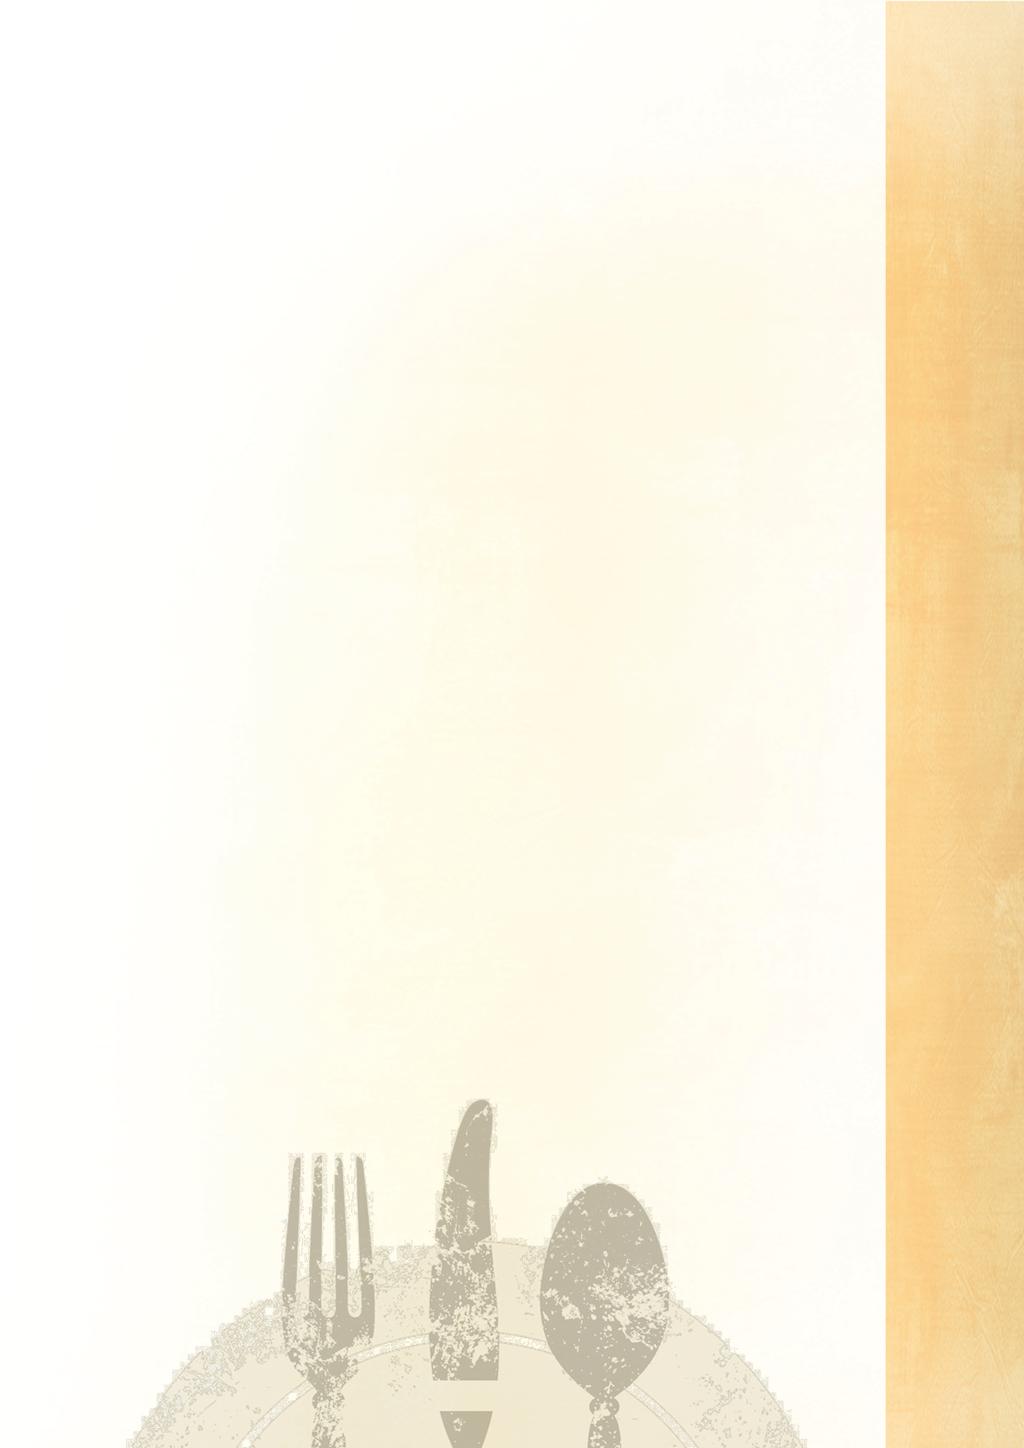 Fleischgerichte vom Schwein und Pute 70 Schnitzel Wiener Art (C,A) 10,50 71 Schnitzel alla Parmiggiana (G,A) 14,50 mit Formfleischvorderschinken 137, Tomaten und Käse 36 überbacken 72